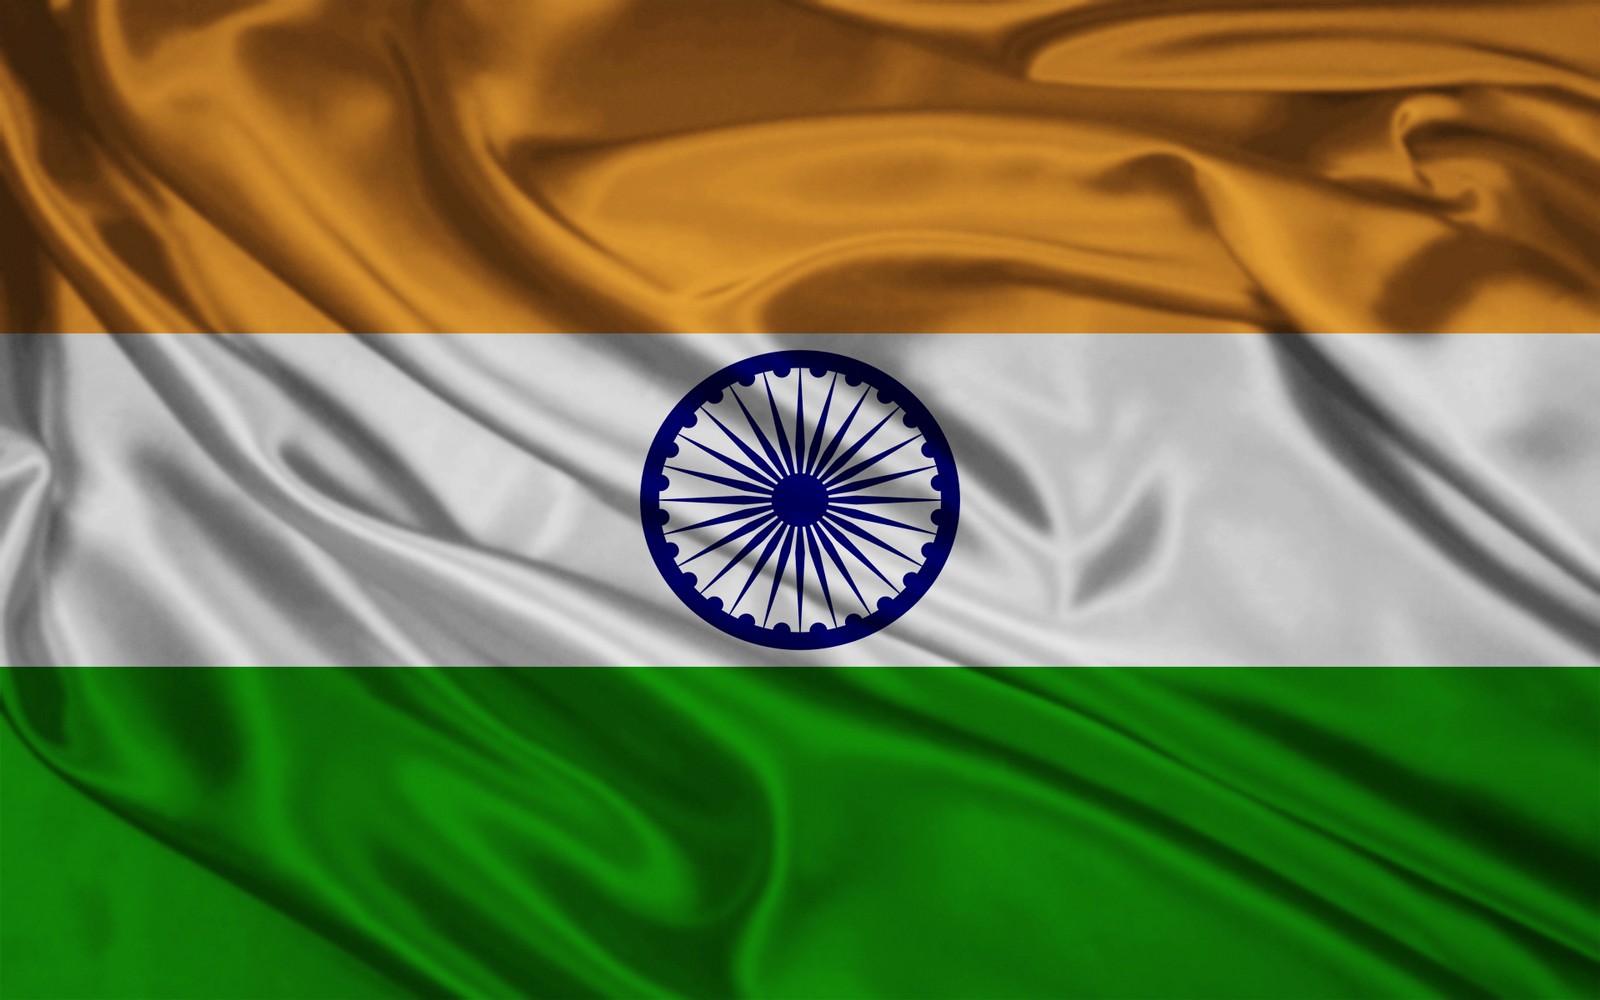 インドの旗の壁紙,国旗,緑,エレクトリックブルー,マクロ撮影